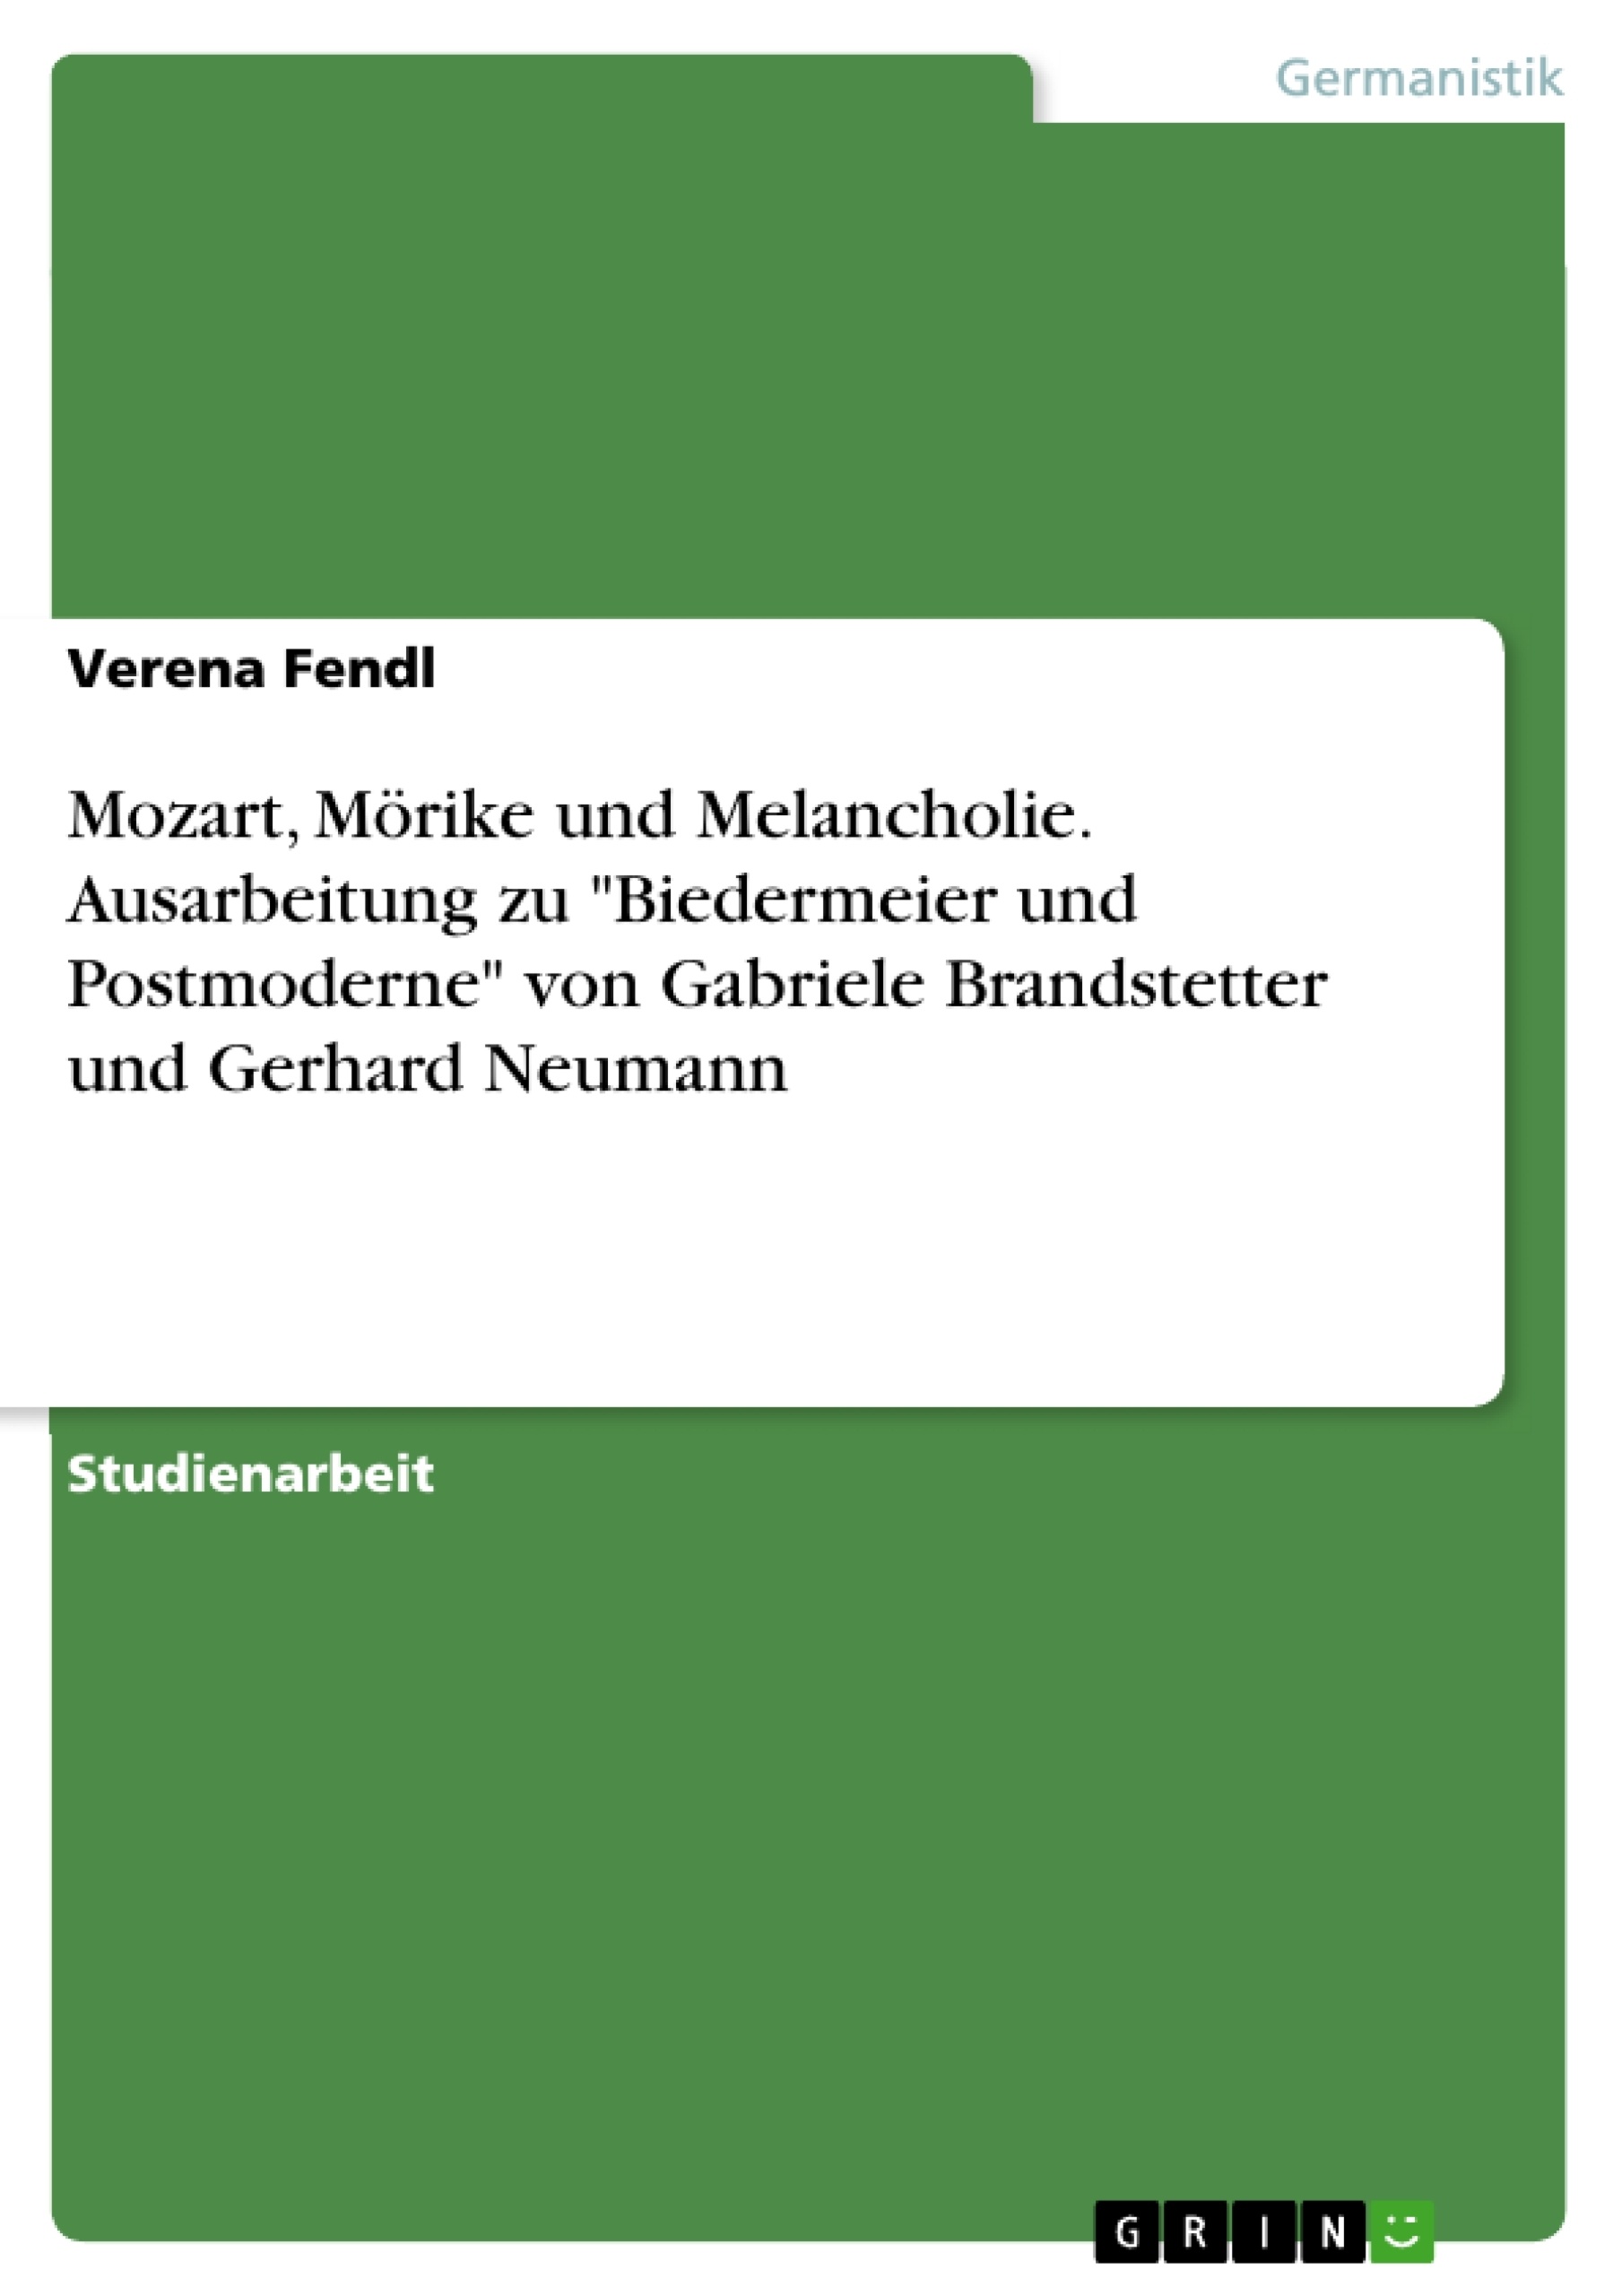 Titre: Mozart, Mörike und Melancholie. Ausarbeitung zu "Biedermeier und Postmoderne" von Gabriele Brandstetter und Gerhard Neumann